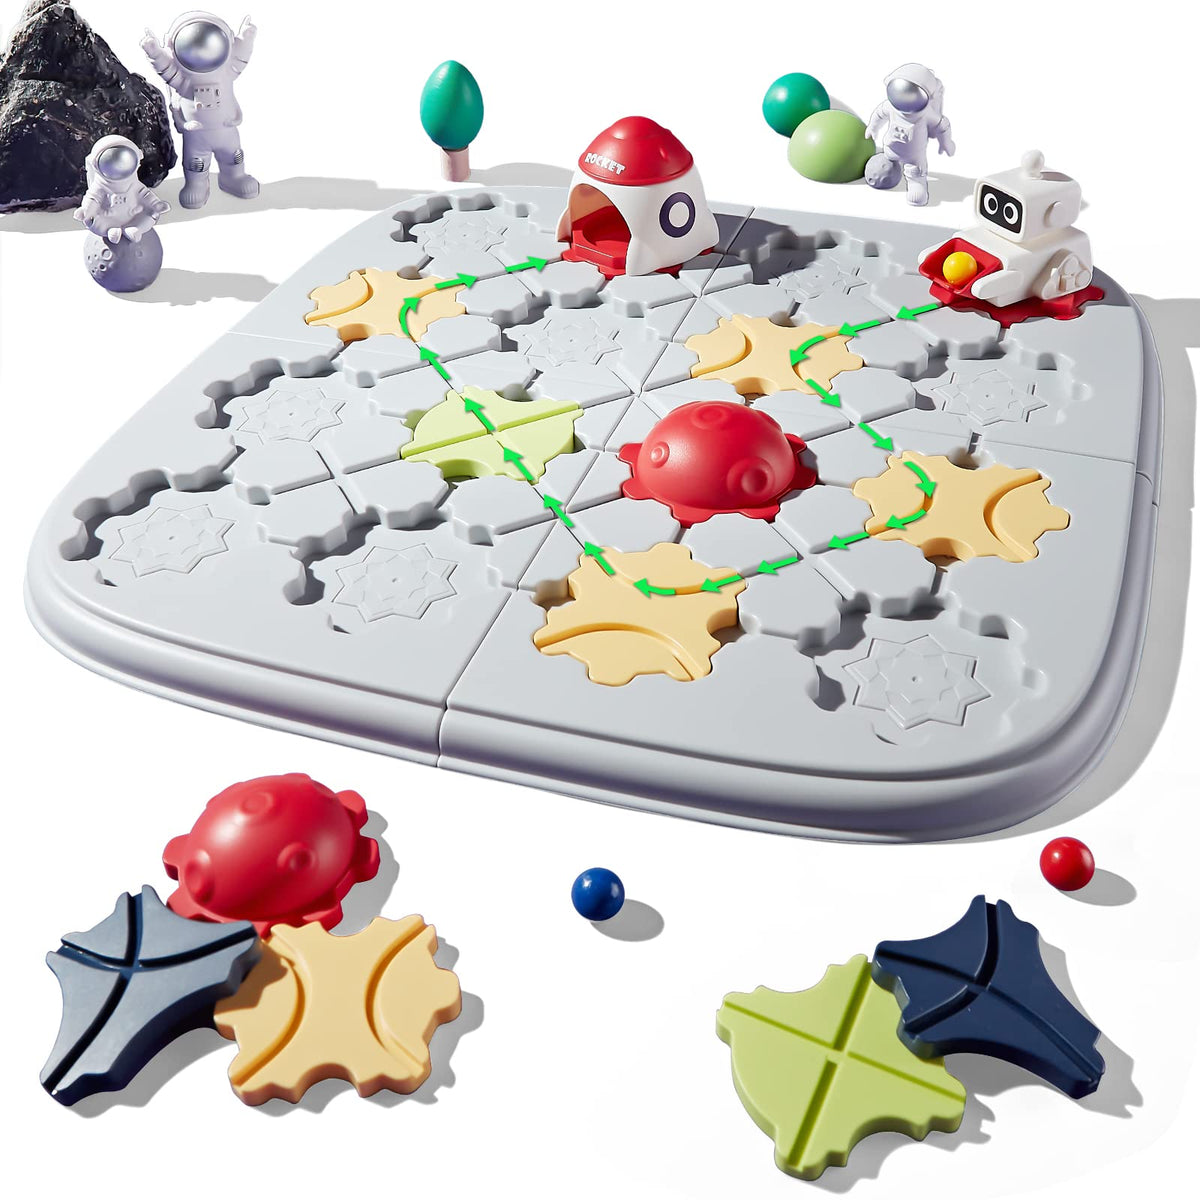 Kids Toys STEM Board Games, Smart Logical Road Builder Brain